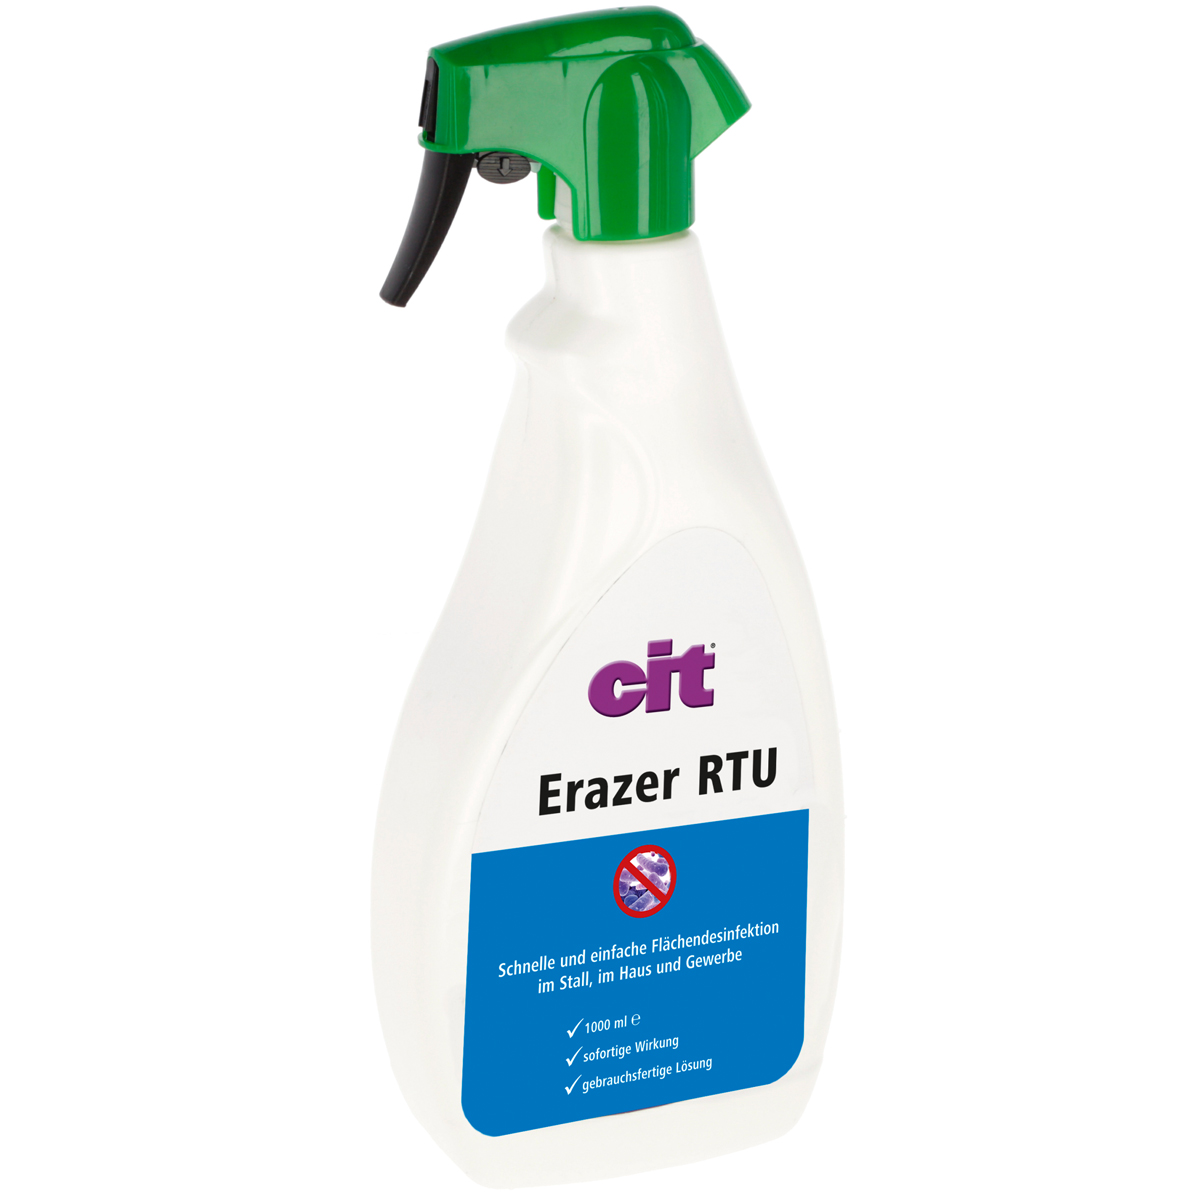 Cit Erazer RTU Flächendesinfektionsspray